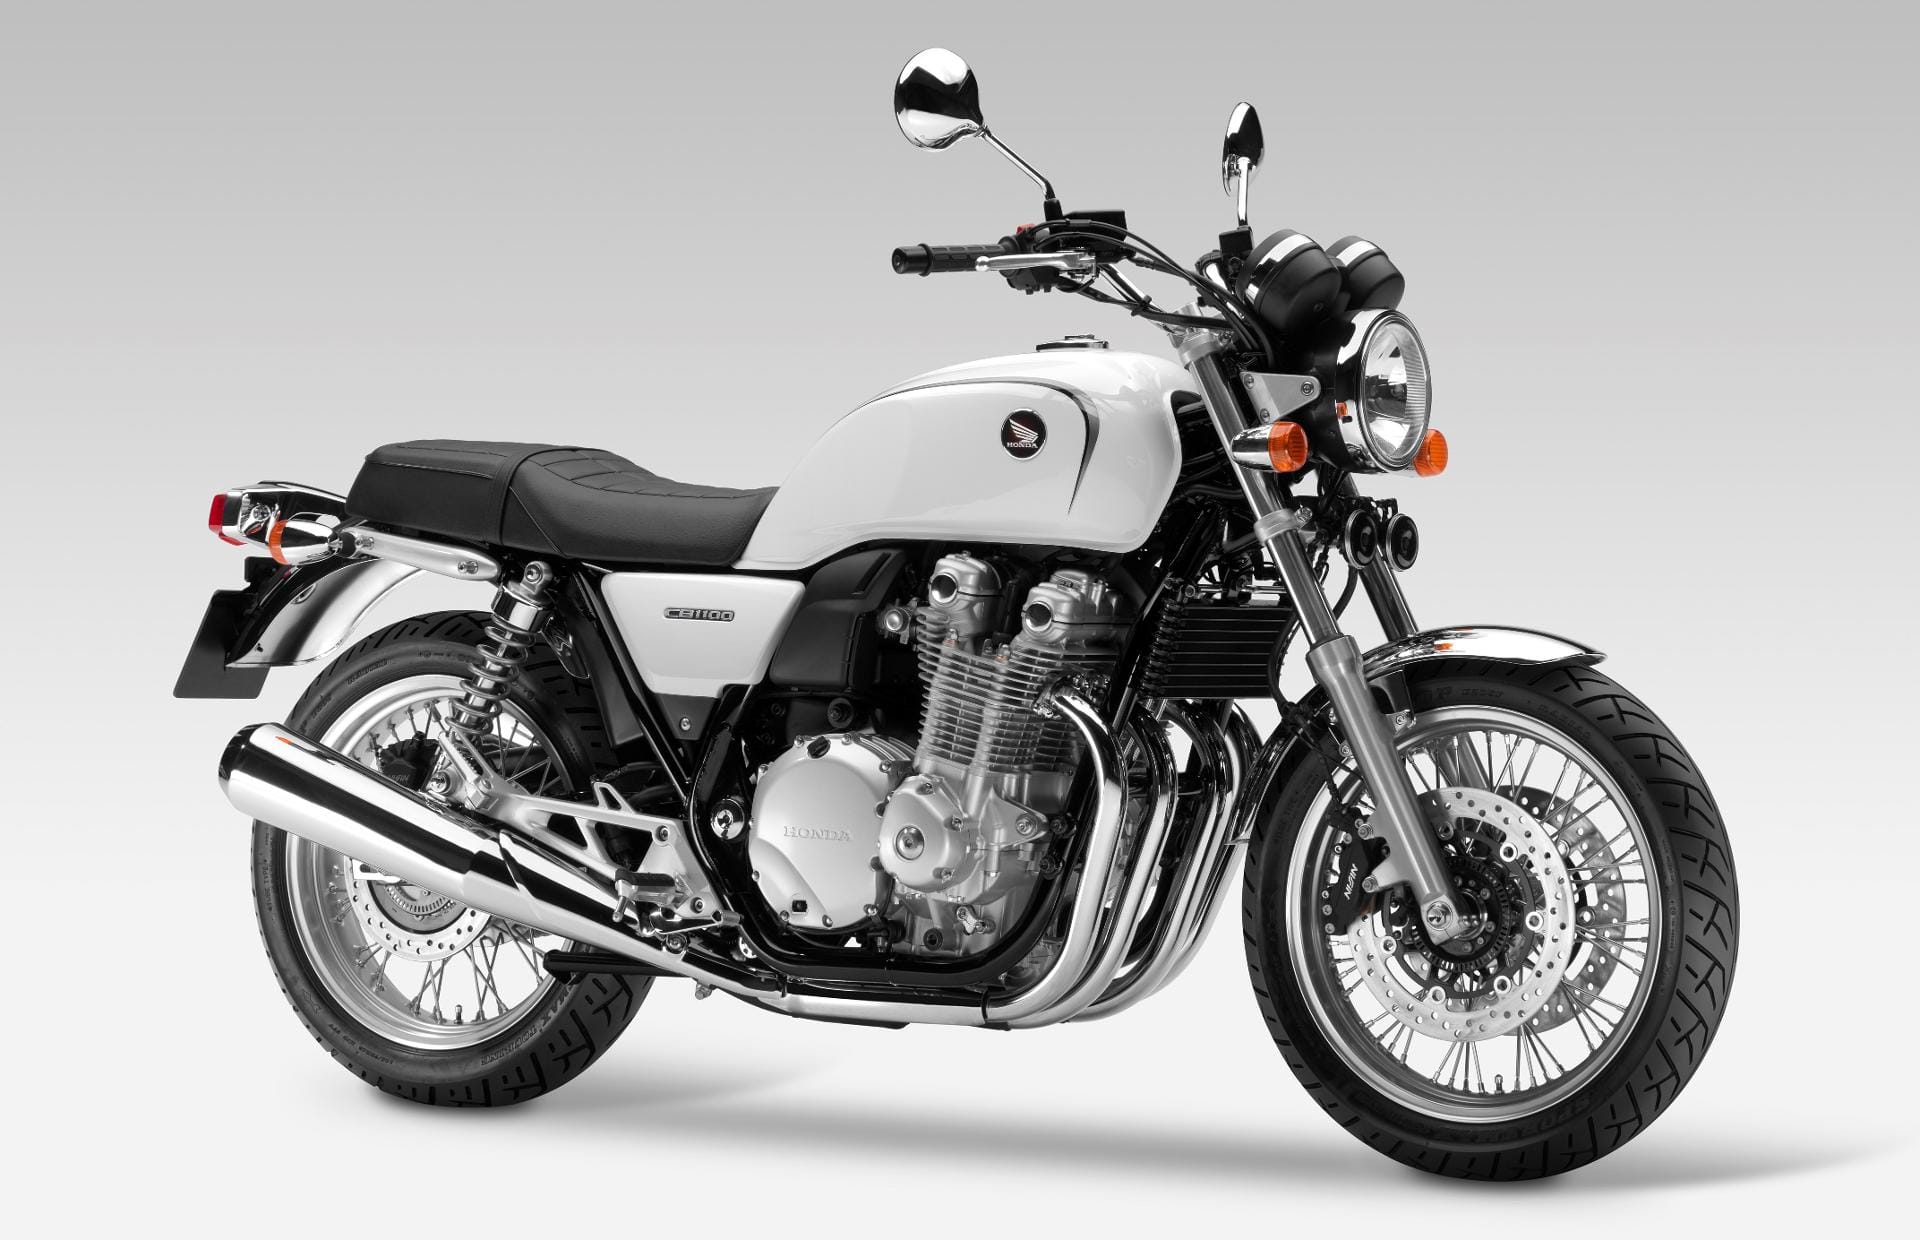 Kein Cafe Racer oder Scrambler, doch die Honda CB1100 EX präsentiert sich als lupenreines Retro-Bike im Stil der 70er.